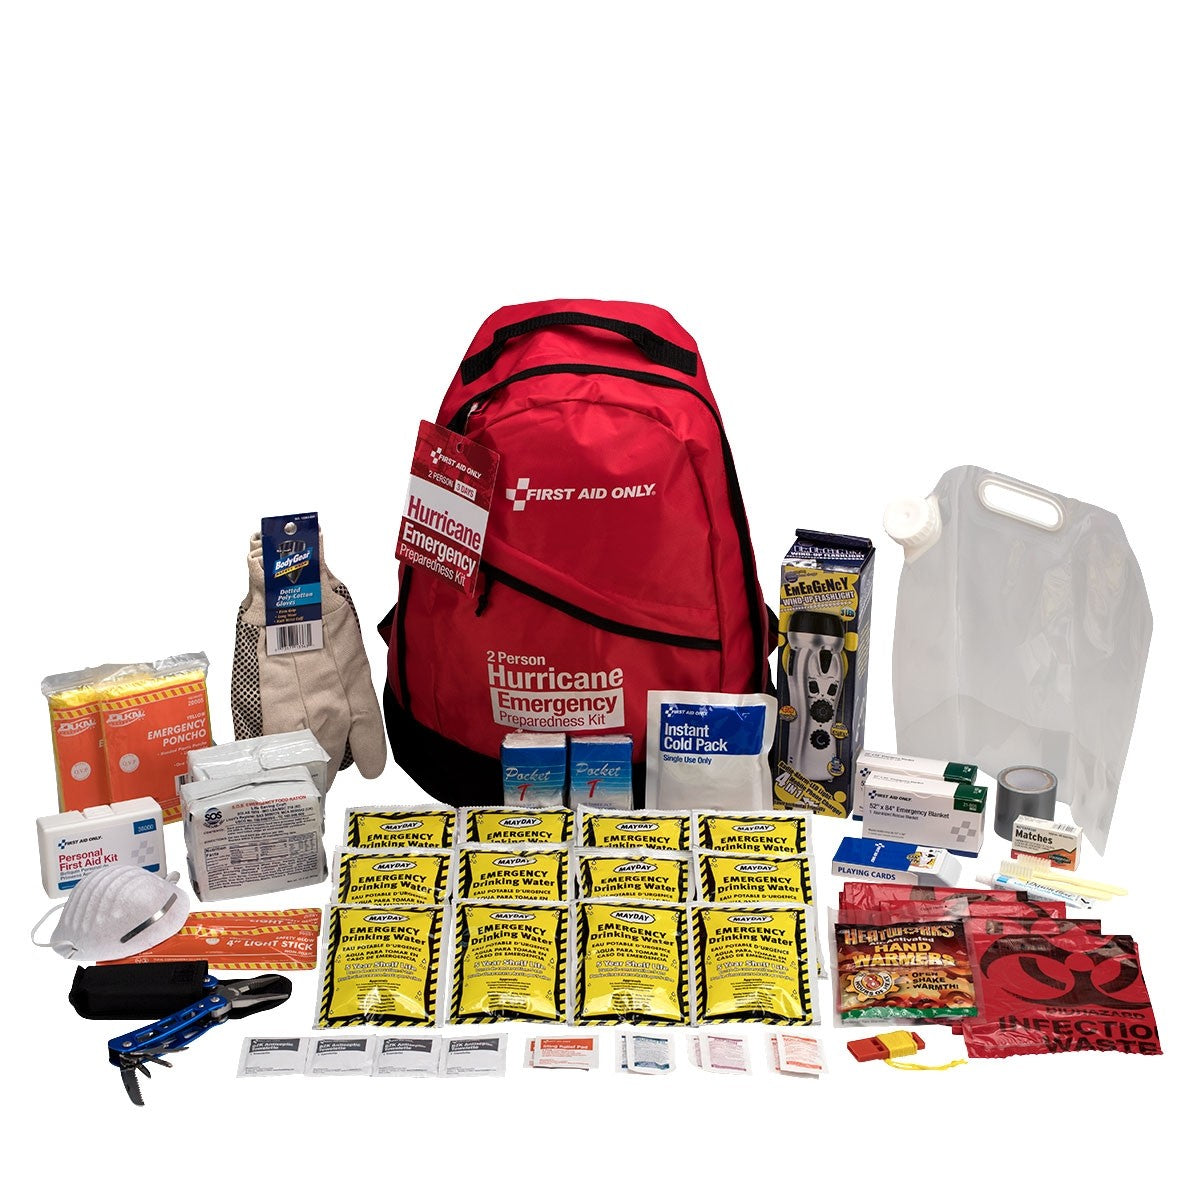 2 Person Emergency Preparedness Hurricane Backpack - W-91055